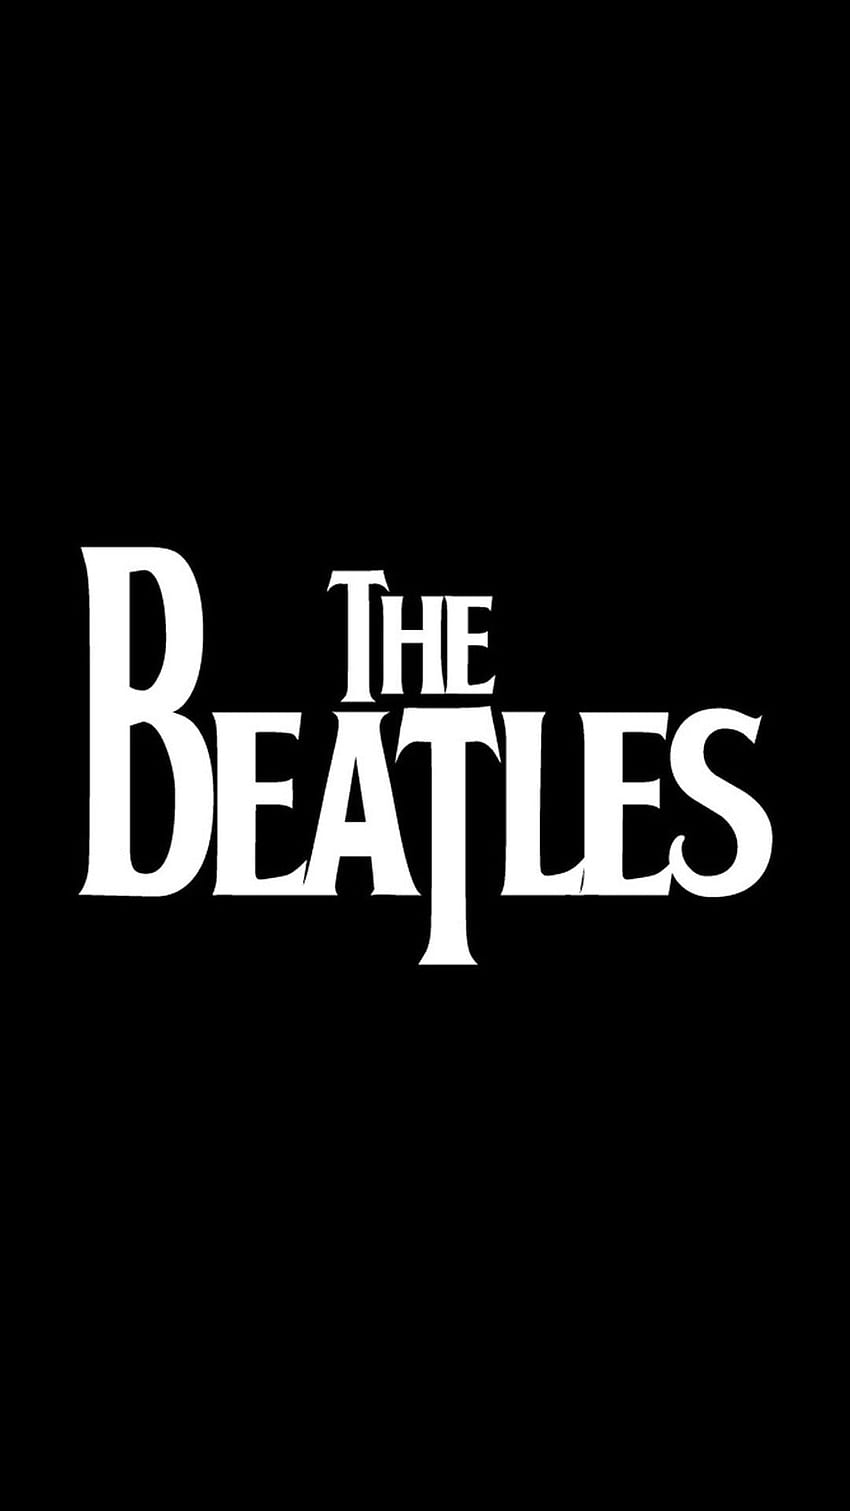 ビートルズのアイフォン。 Beatles , Beatles iphone, Rock band logos, The Beatles ロゴ HD電話の壁紙